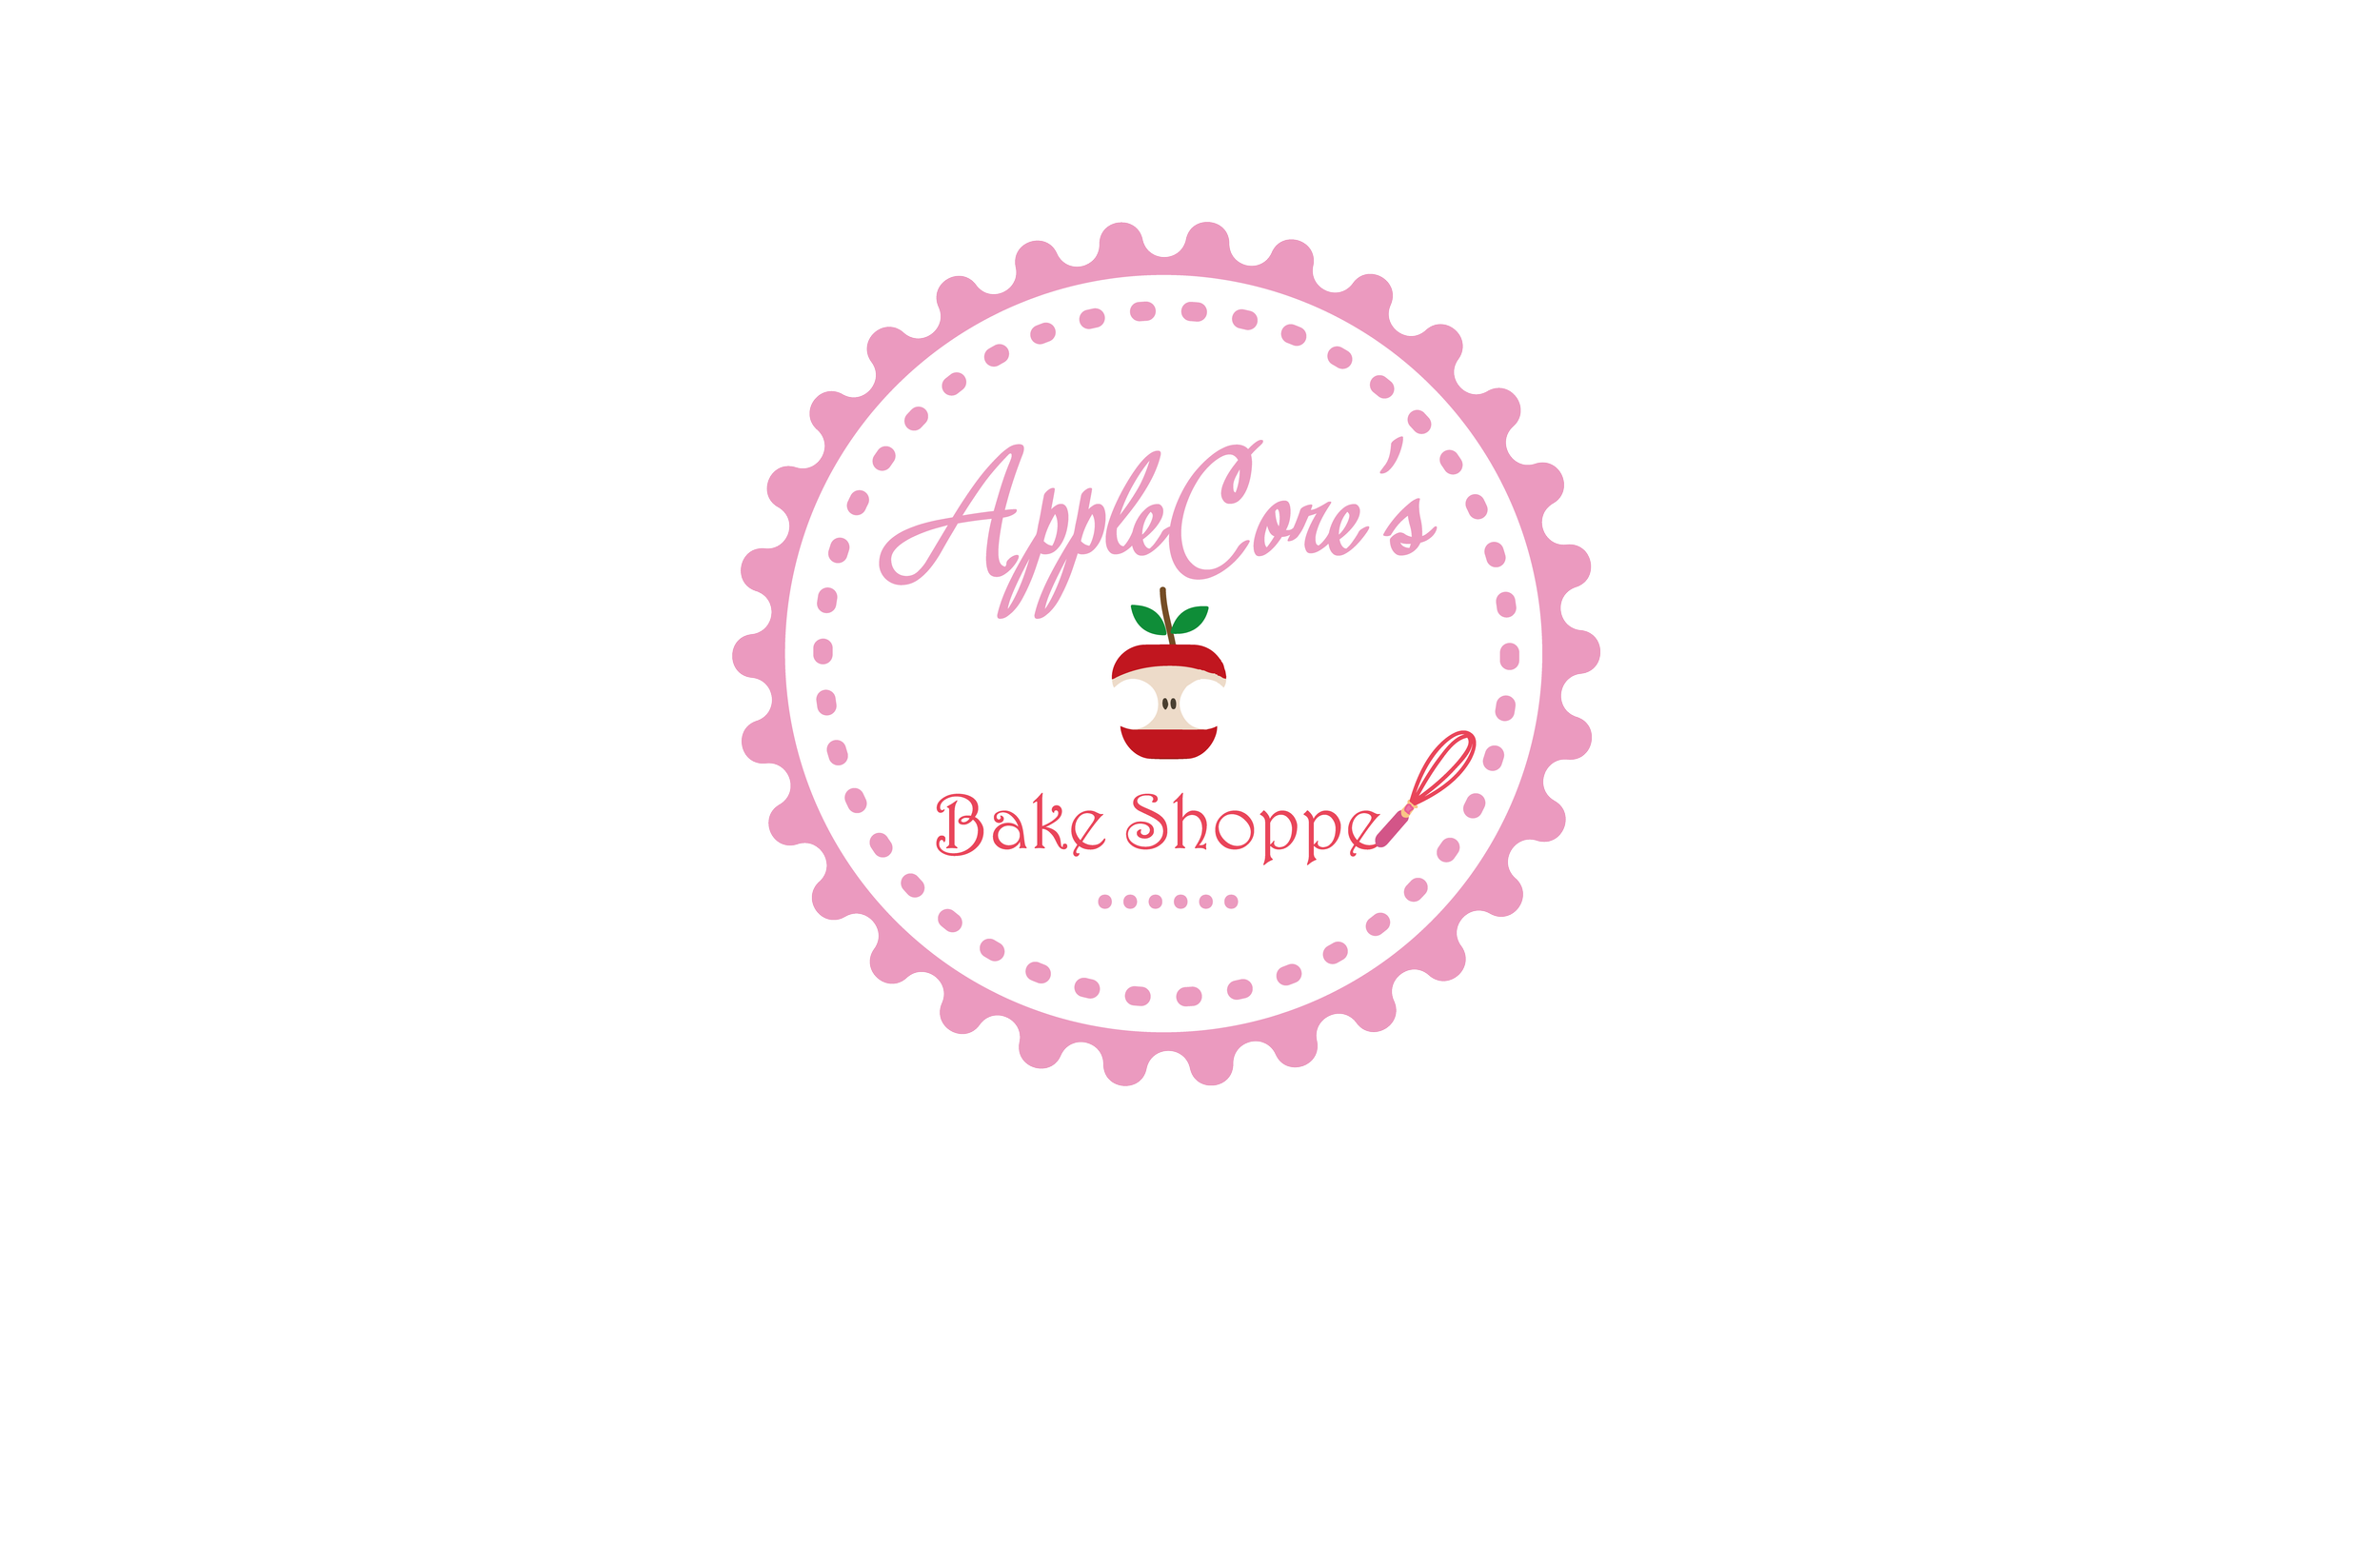 AppleCore's Bake Shoppe